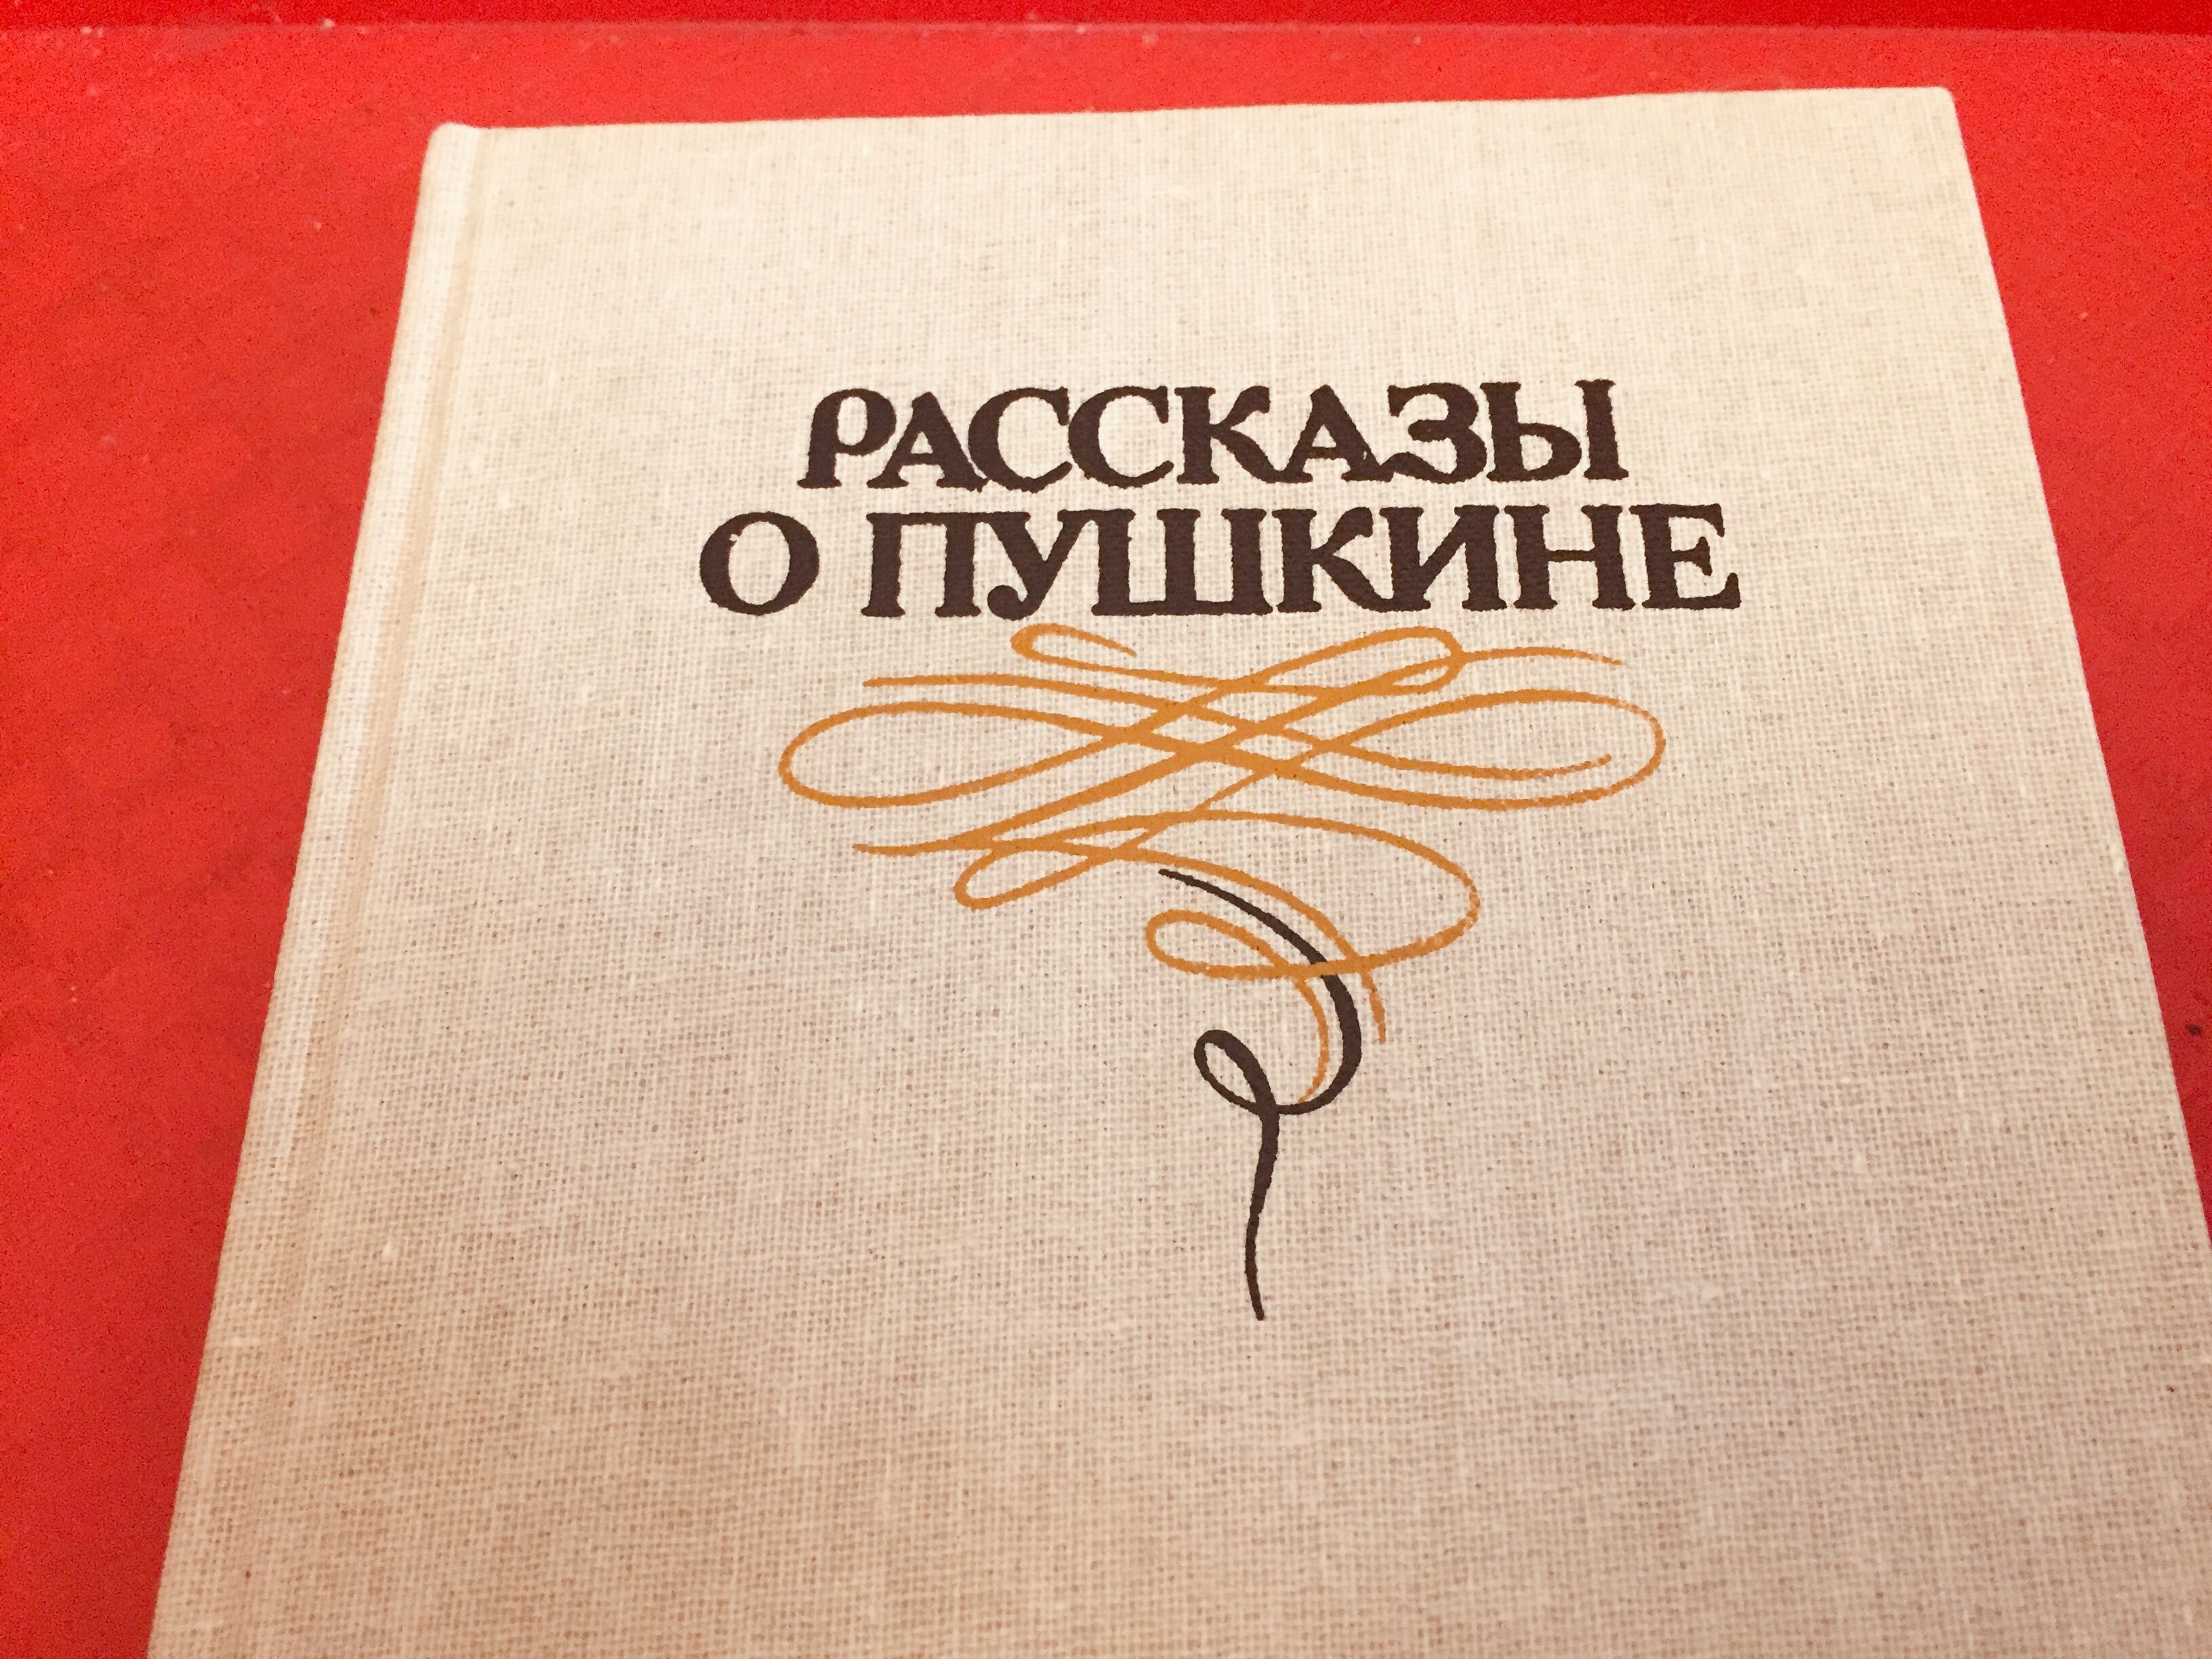 Рассказы о Пушкине 1986 г 368 стр отл .состояние 60 гр, твердый перепл